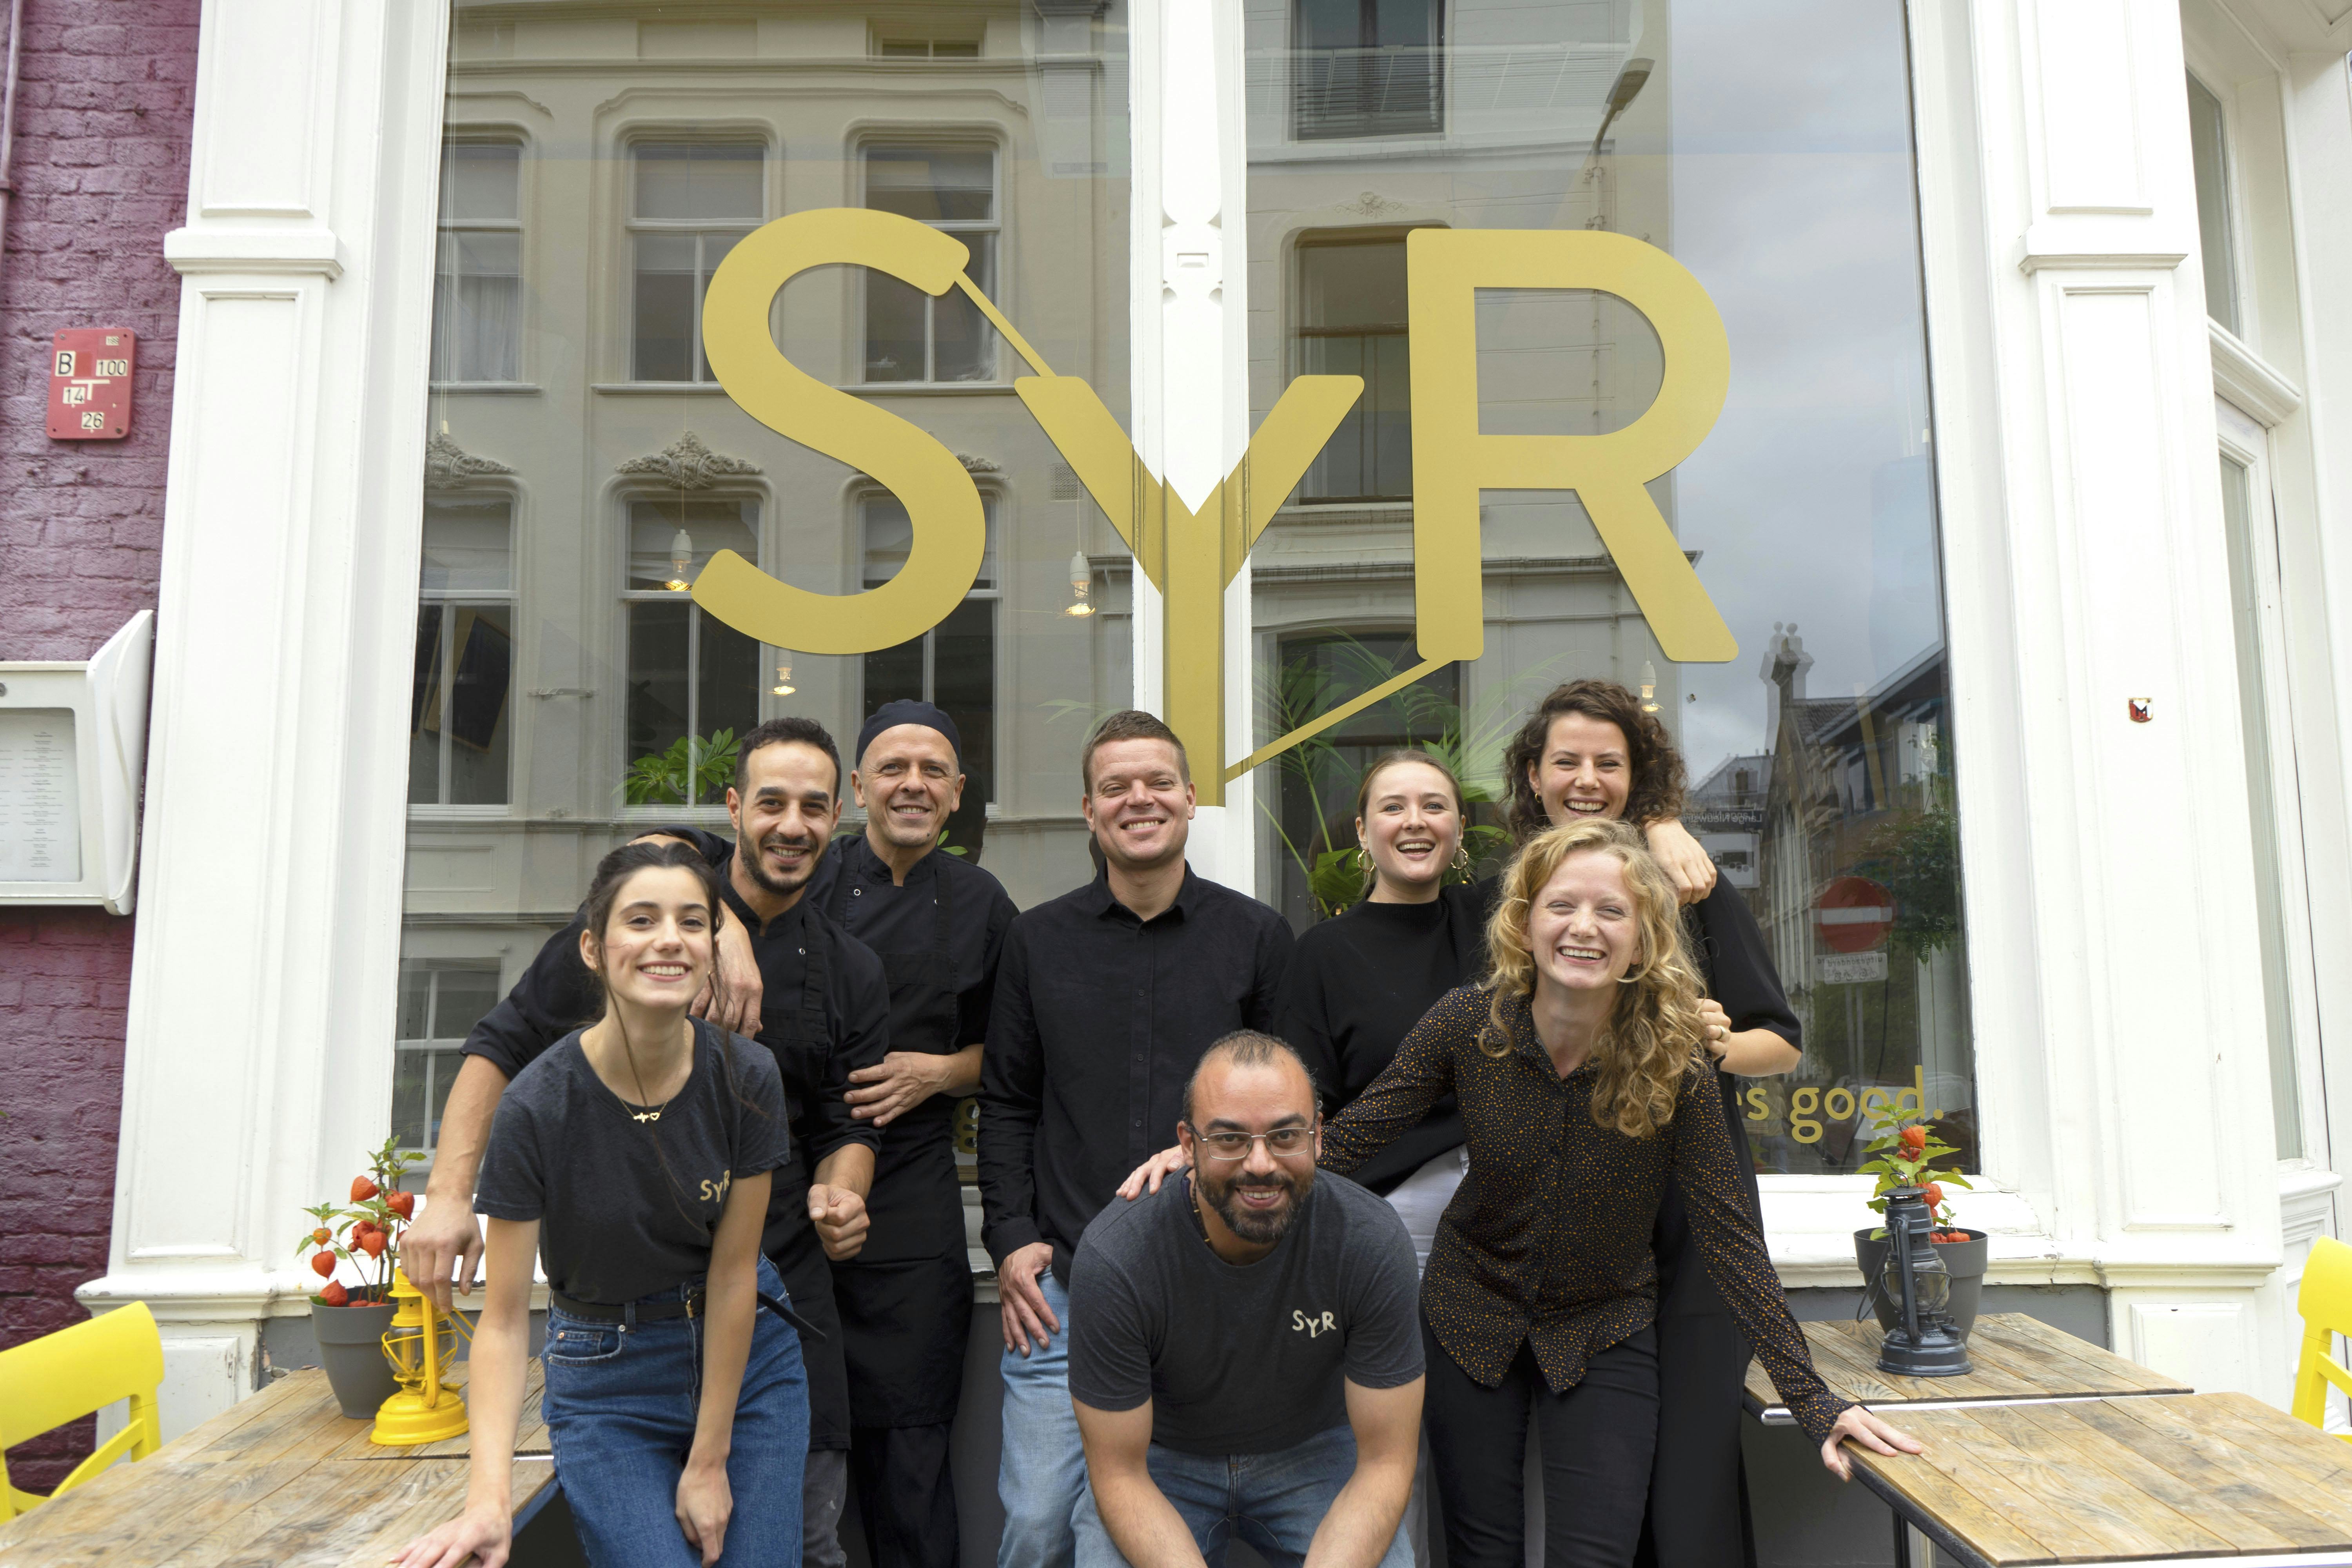 Sluiting restaurant Syr lijkt voorkomen door crowdfundingsactie